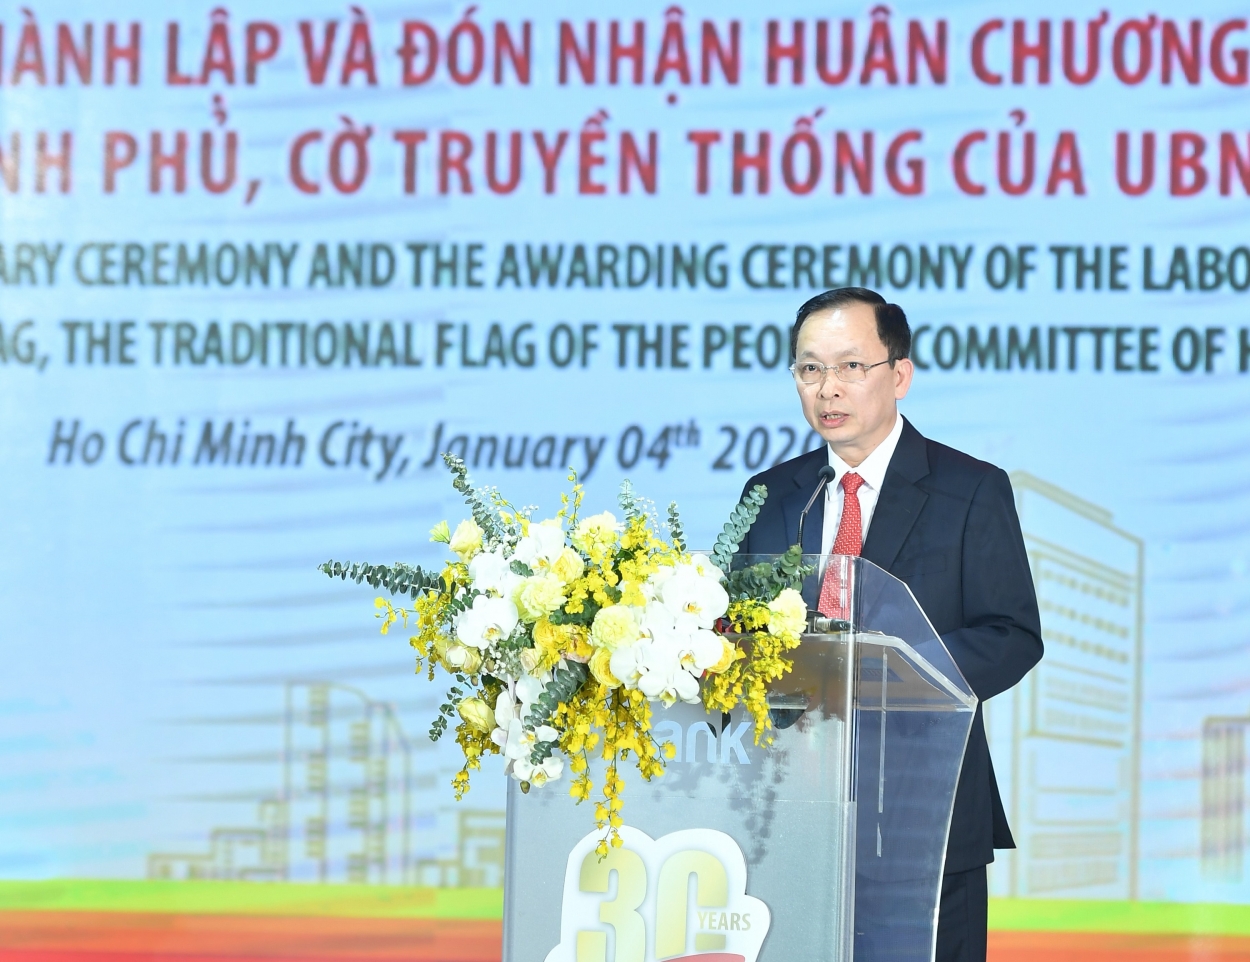 Ông Đào Minh Tú - Phó Thống đốc Ngân hàng Nhà nước khẳng định: Những thành quả quan trọng HDBank đạt được trong 30 năm qua đã góp phần quan trọng vào sự nghiệp đổi mới phát triển của hệ thống ngân hàng Việt Nam và của đất nước.